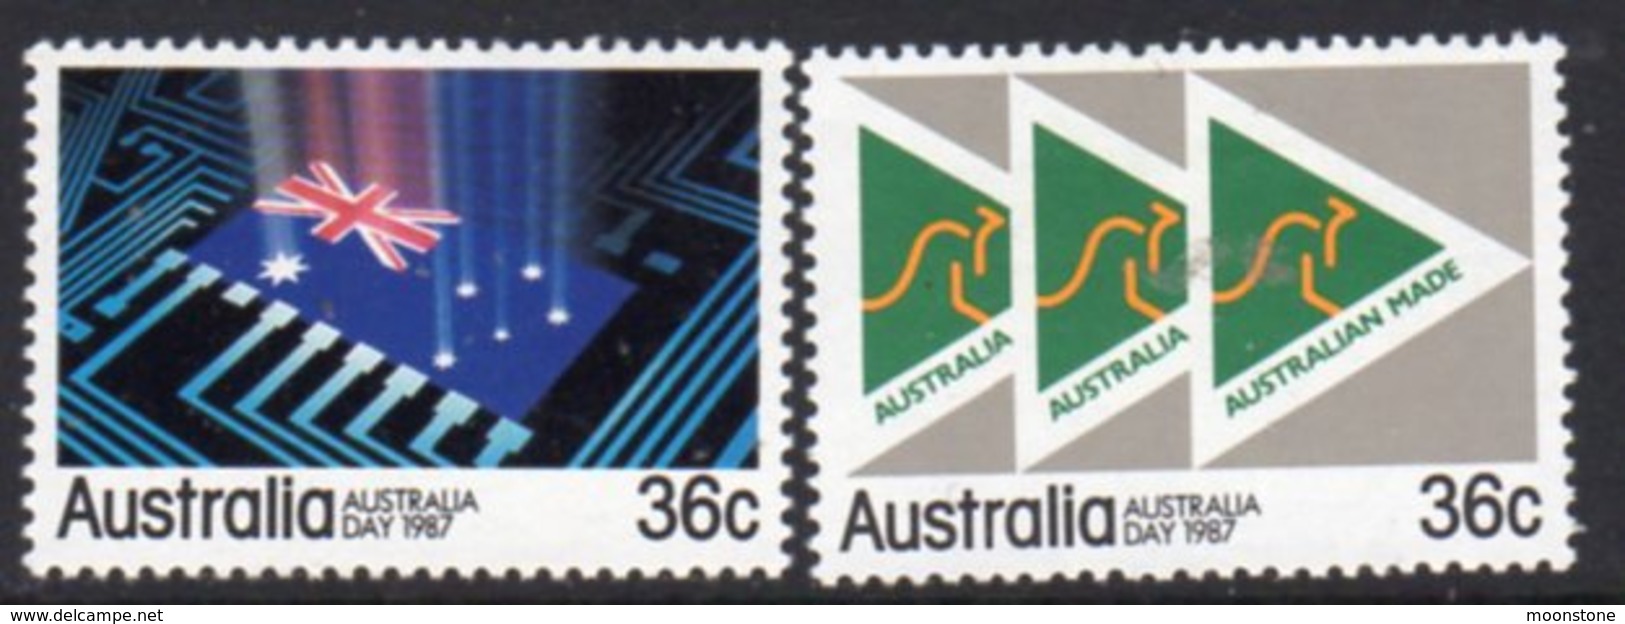 Australia 1987 Australia Day Set Of 2, MNH, SG 1044/5 - Mint Stamps